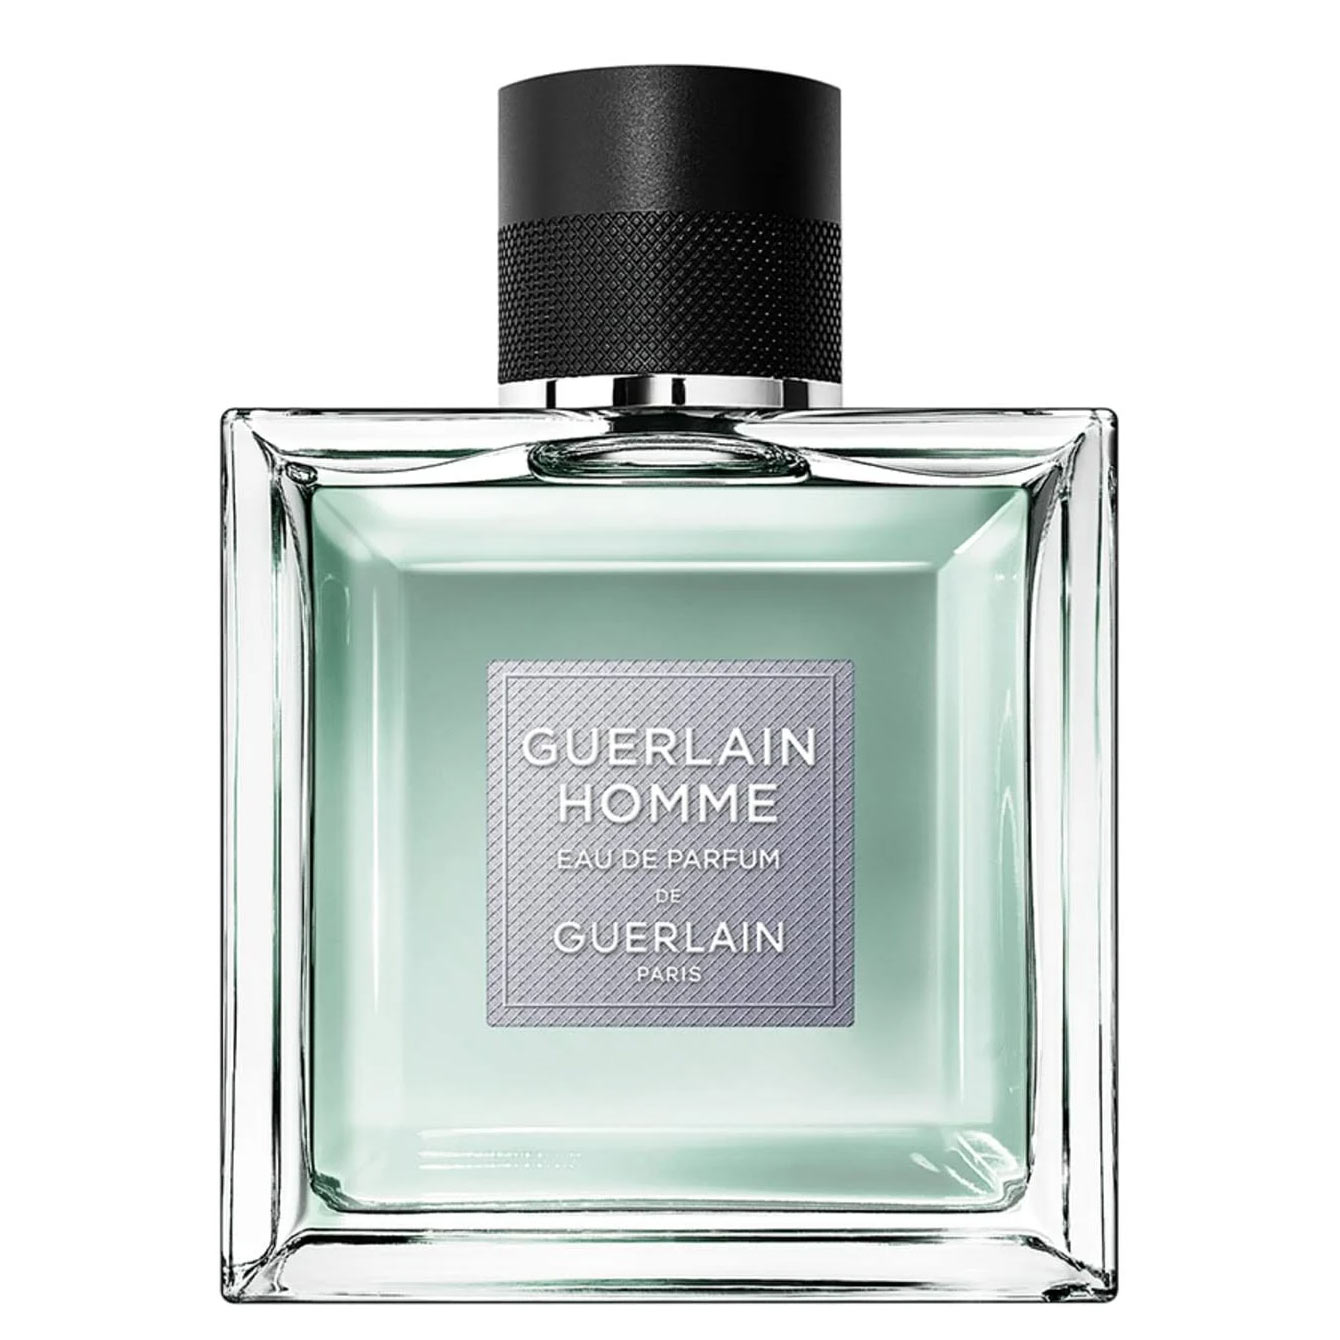 Guerlain Homme Eau de Parfum Guerlain Image